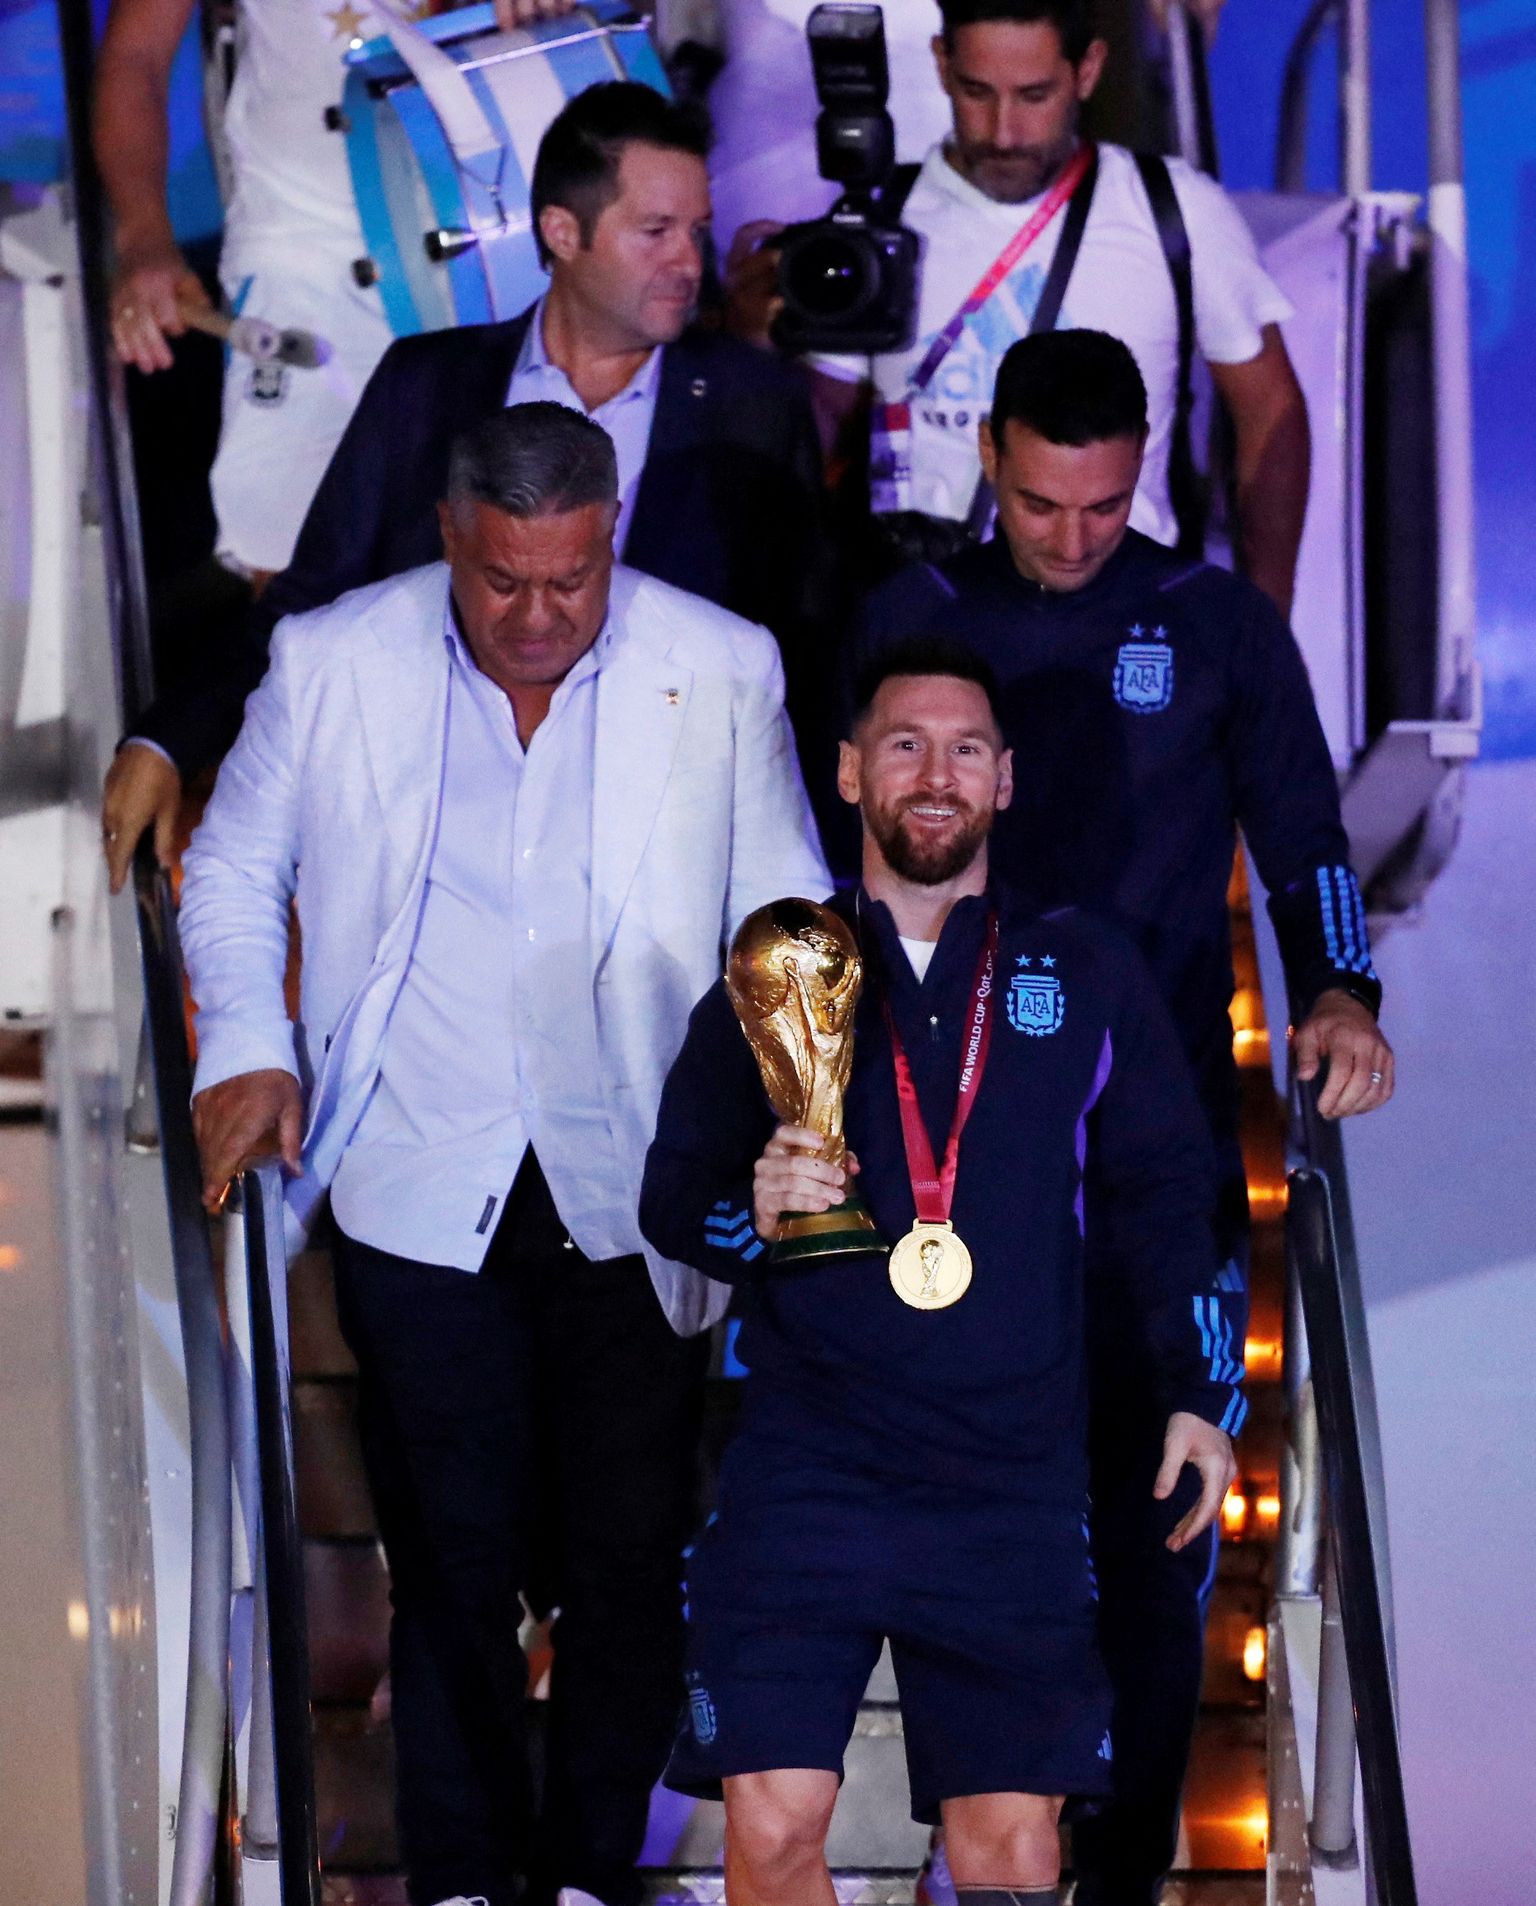 Katari MMi võitnud Argentina jalgpallikoondis jõudis koju tagasi 20. detsembril. Pildil on Lionel Messi, kelle käes on MMi karikas, ta meeskonnakaaslased, ametnikud ja fotograafid astumas Buenos Aireses Ezeiza lennujaamas lennukilt maha